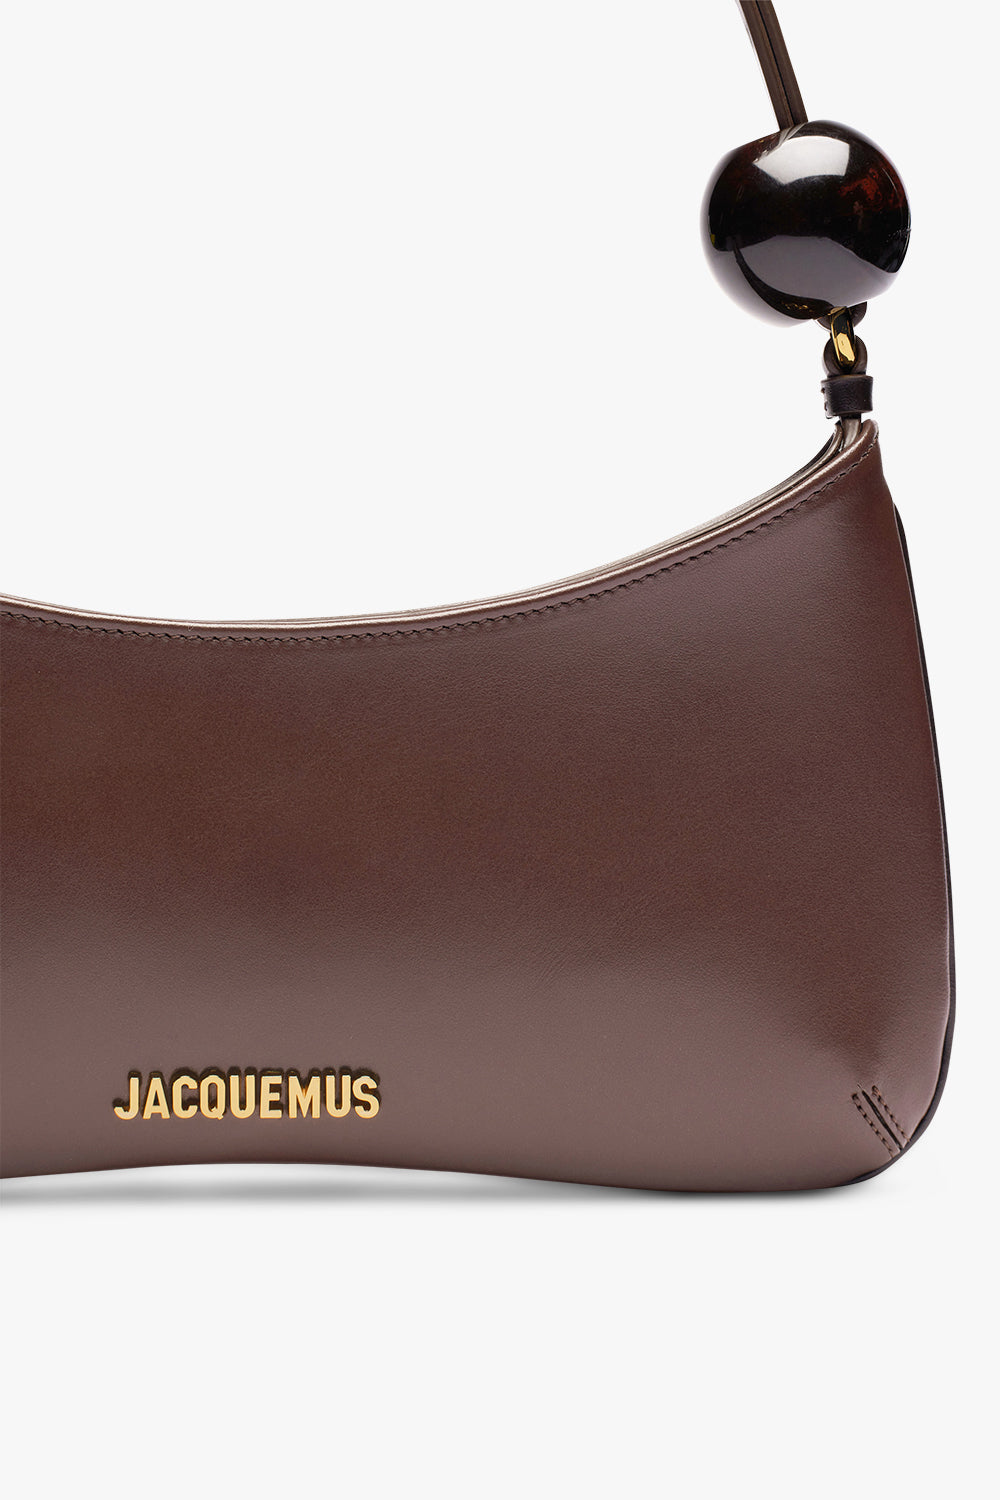 JACQUEMUS BAGS BROWN LE BISOU PERLE BAG | MEDIUM BROWN